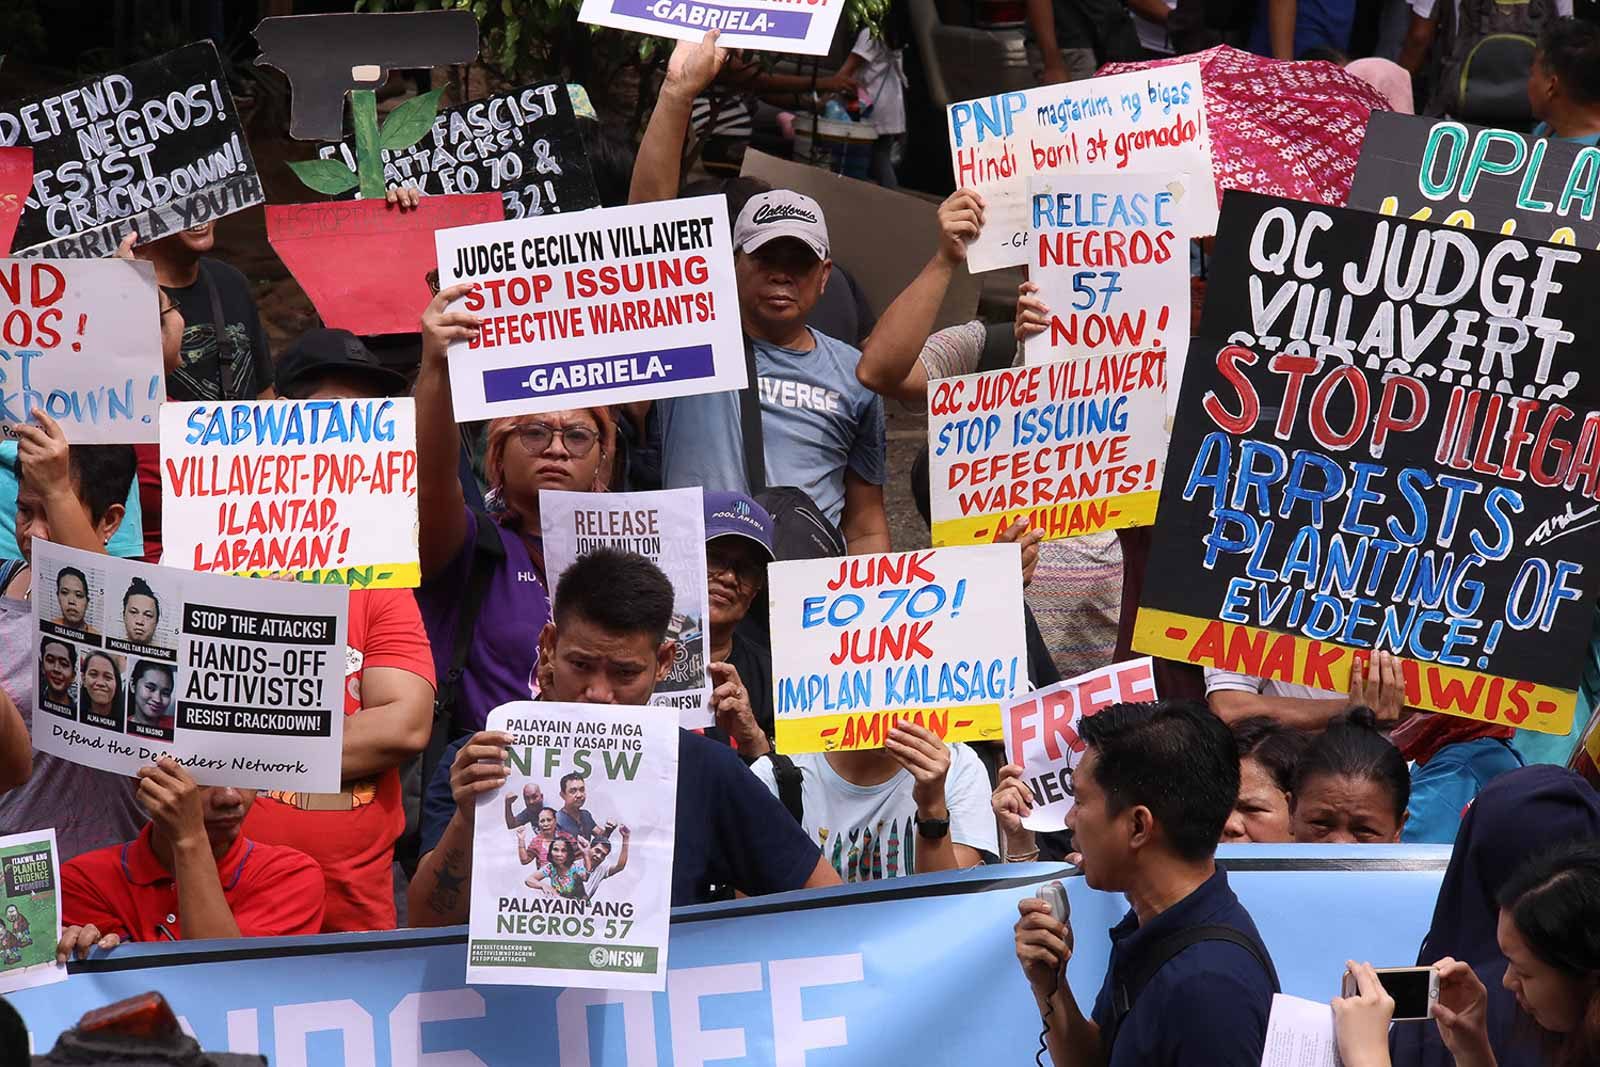 U.N. experts remind Duterte gov’t: Targeting activists makes them vulnerable to violence